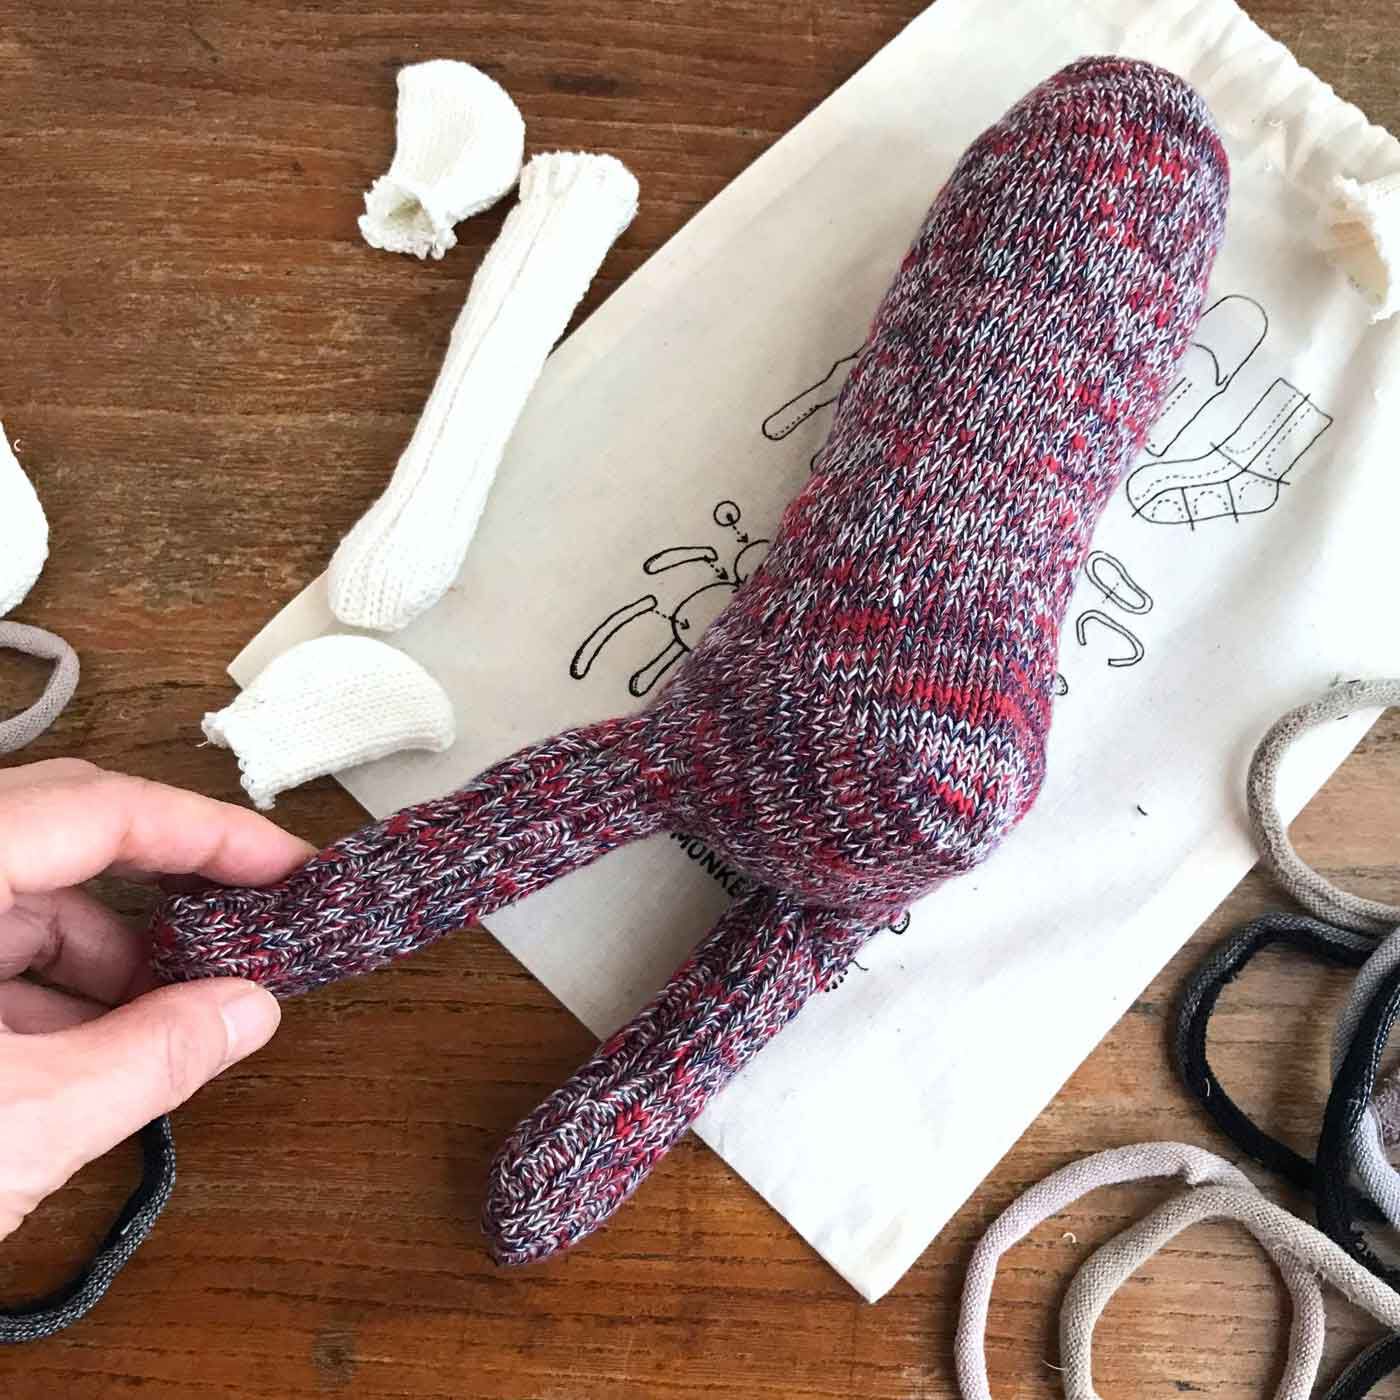 フェリシモの雑貨 Kraso|残糸で編んだ靴下と端材で作るおさるのぬいぐるみキット〈巾着付き〉|フーズノート店主作。ちょっと詰め物が多すぎたかな。まぁいいや！フィーリングで作るのだ。